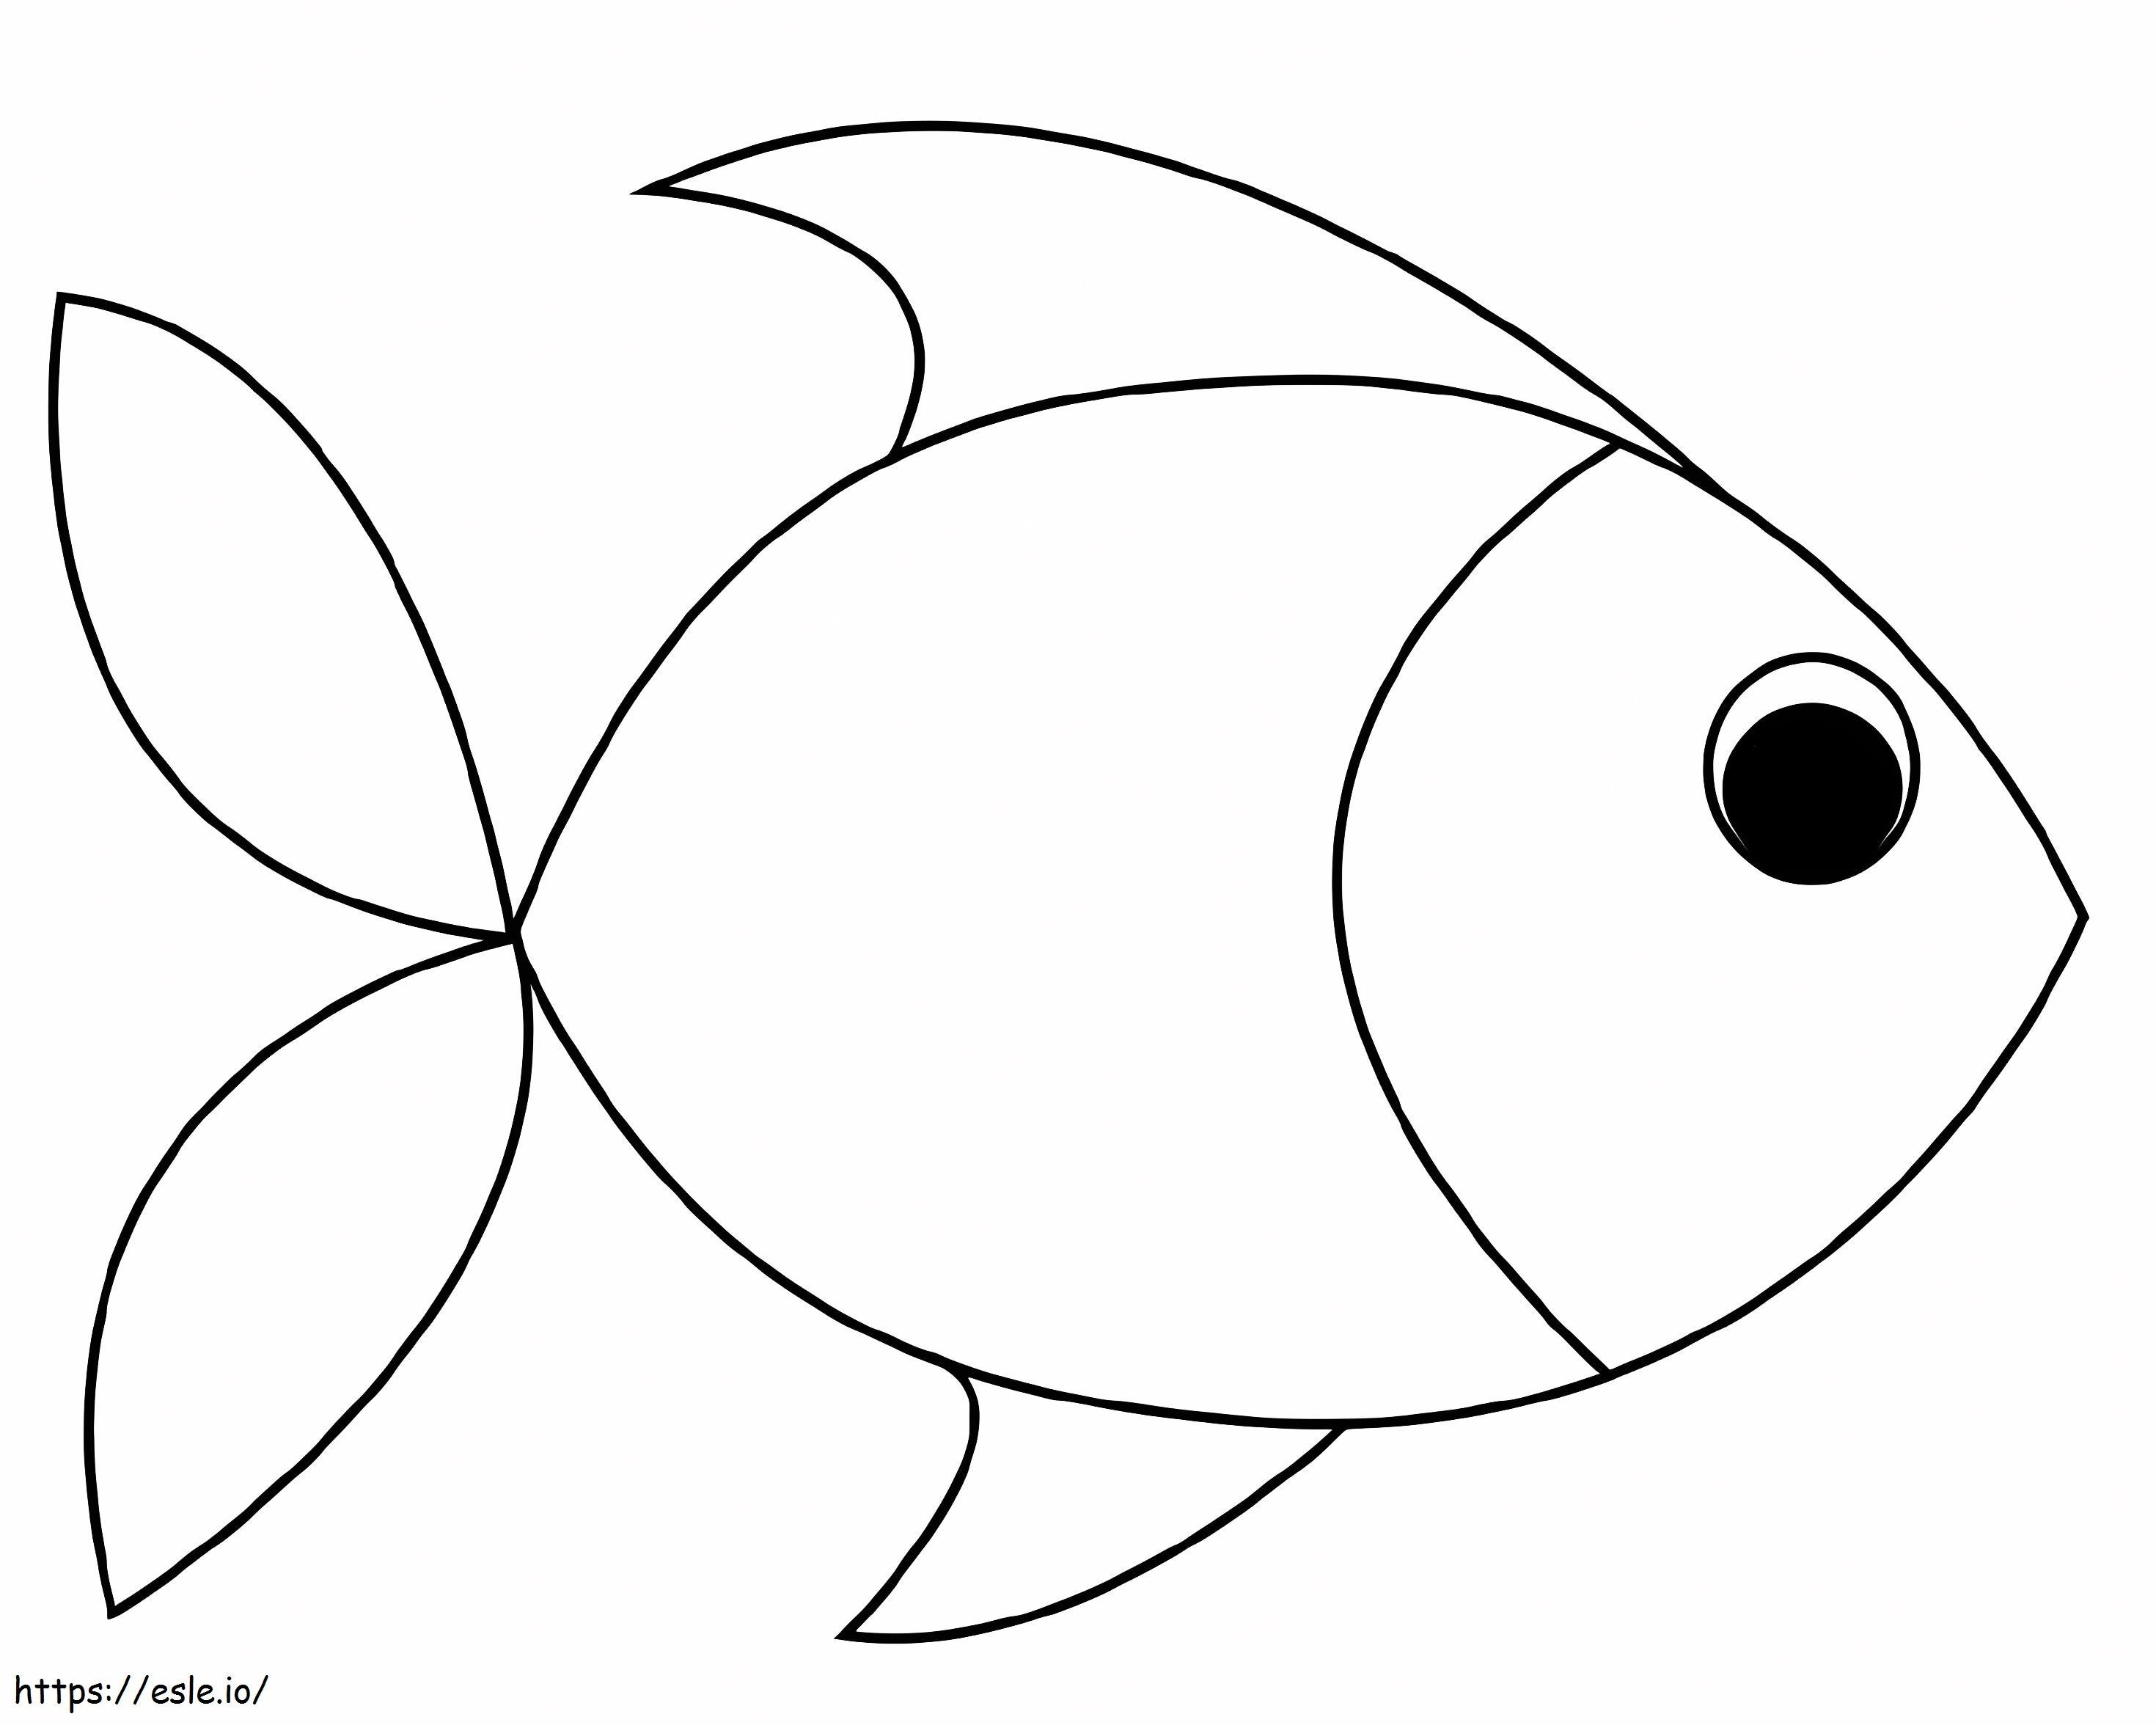 Einfacher Fisch ausmalbilder